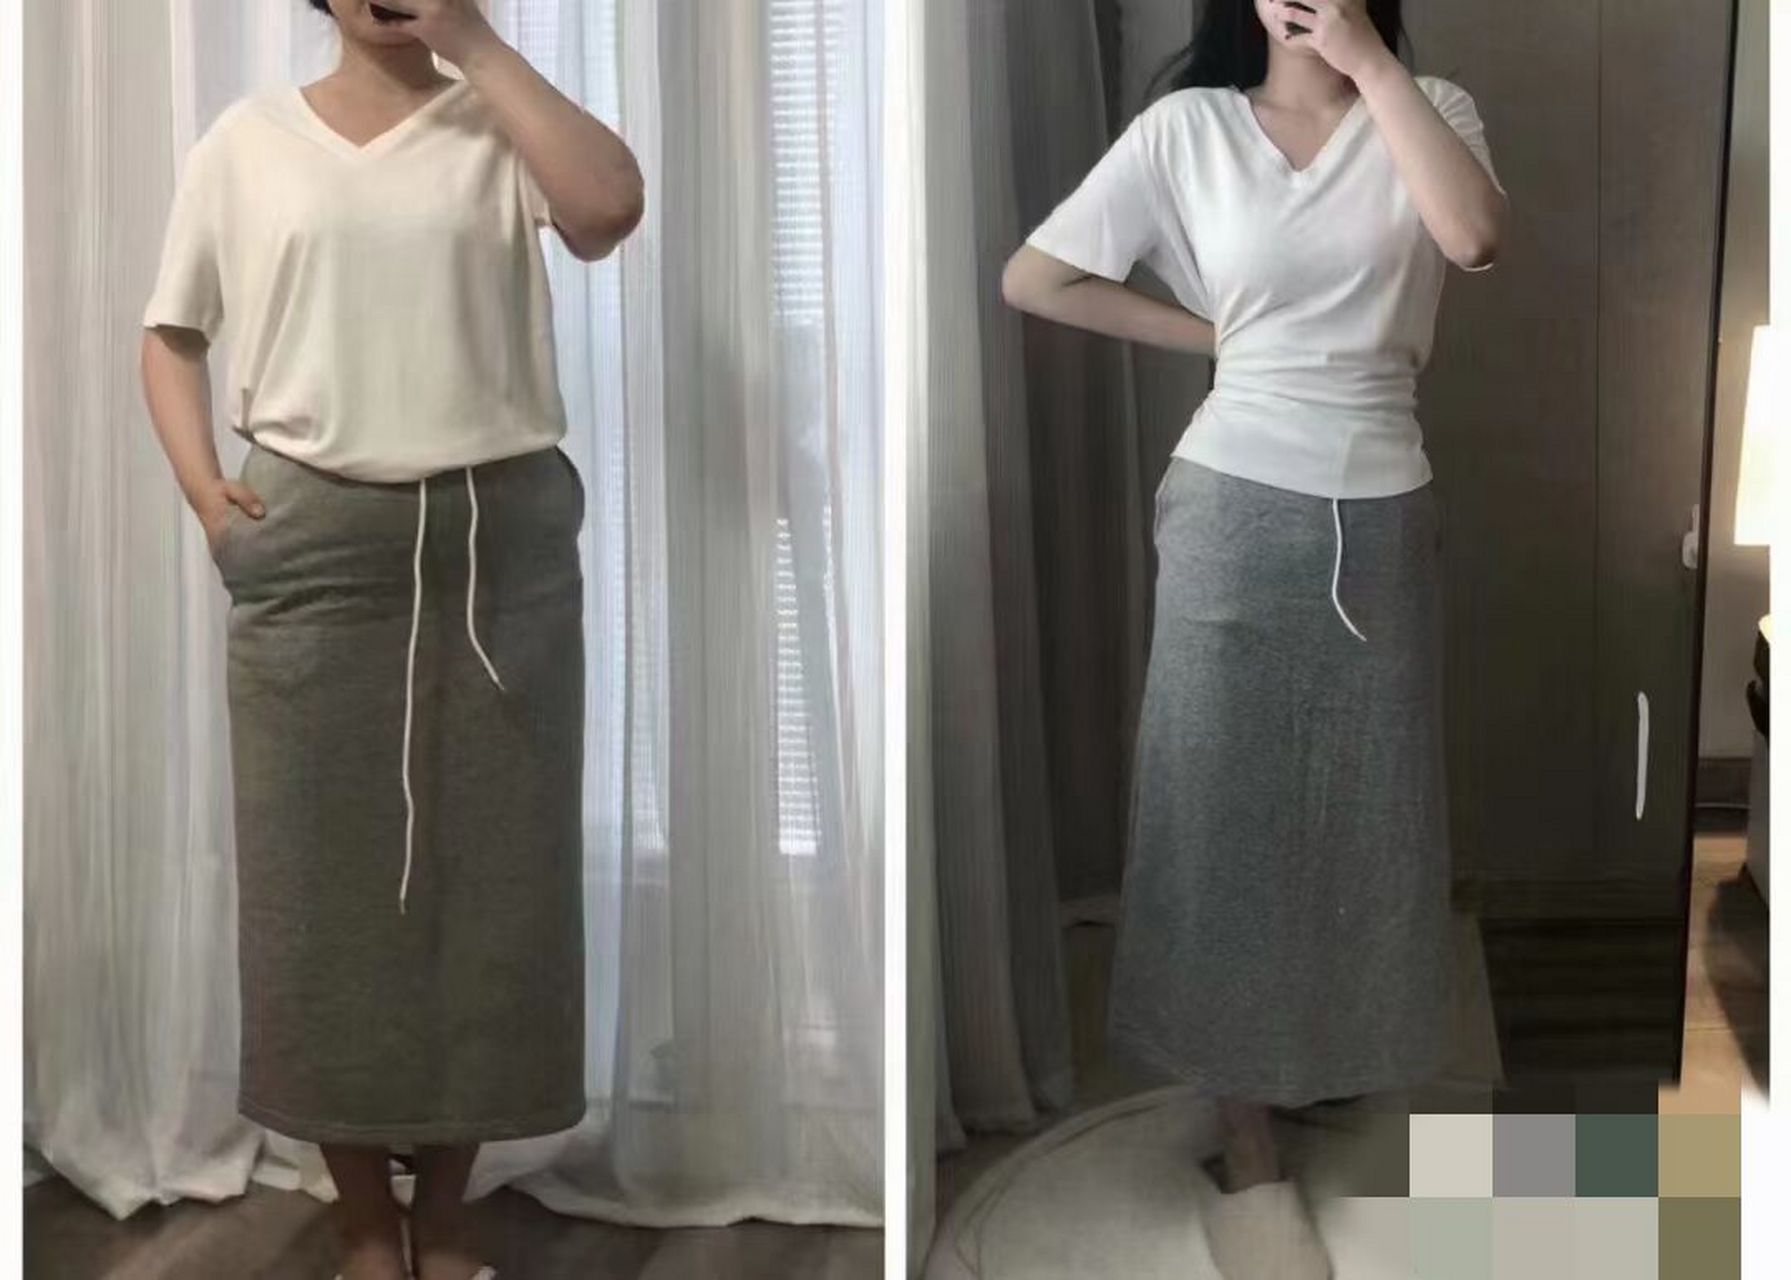 同款衣服胖瘦对比照图片